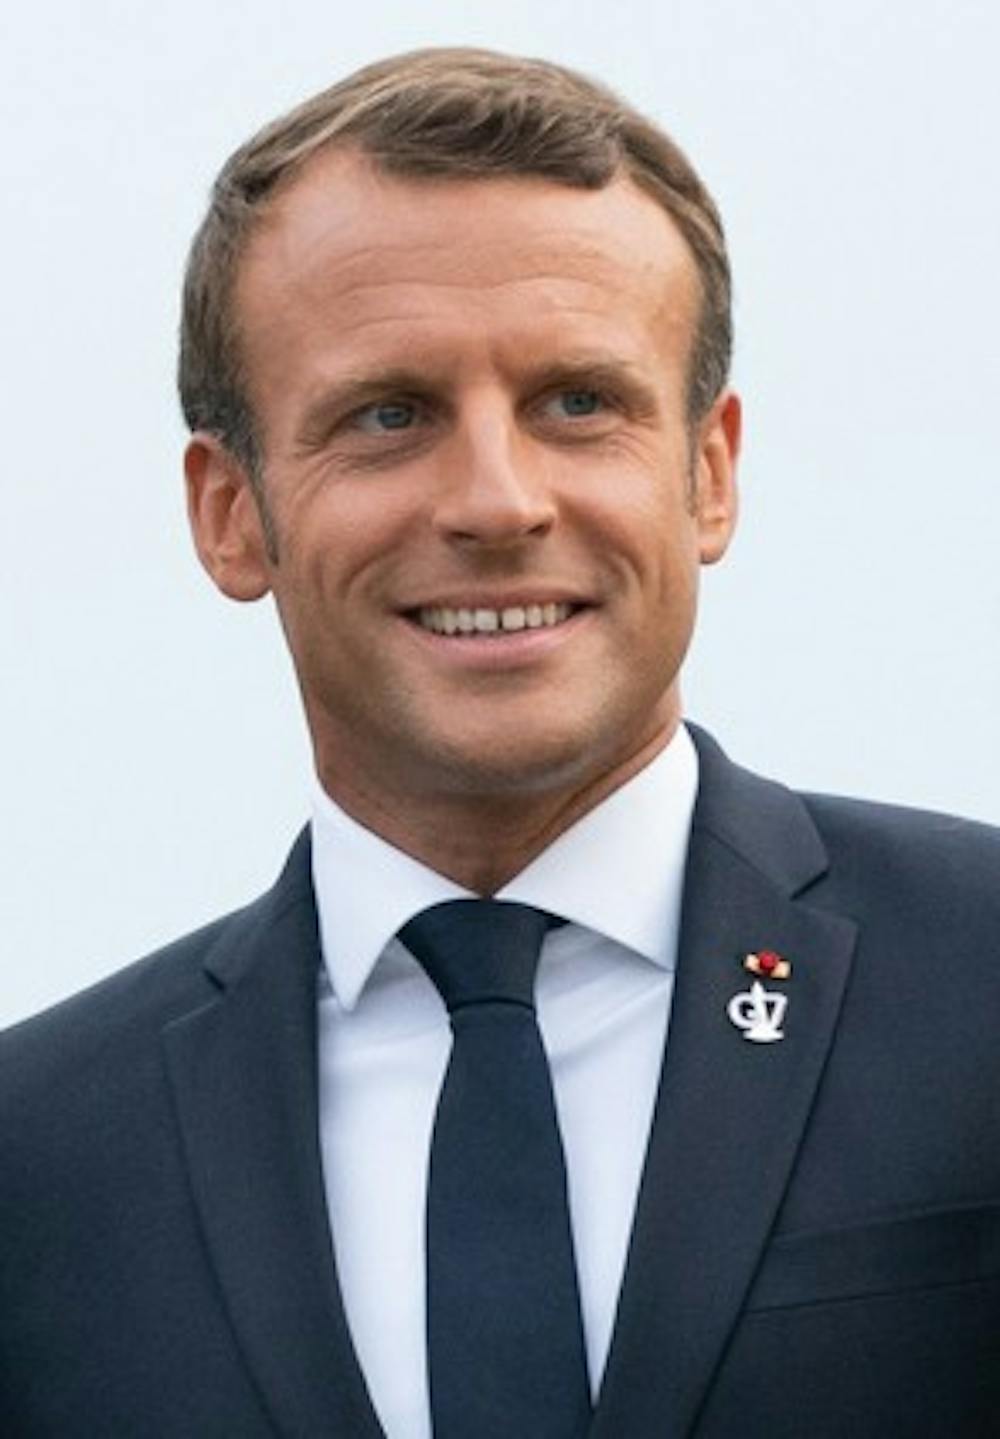 Emmanuel_Macron_in_2019.jpg